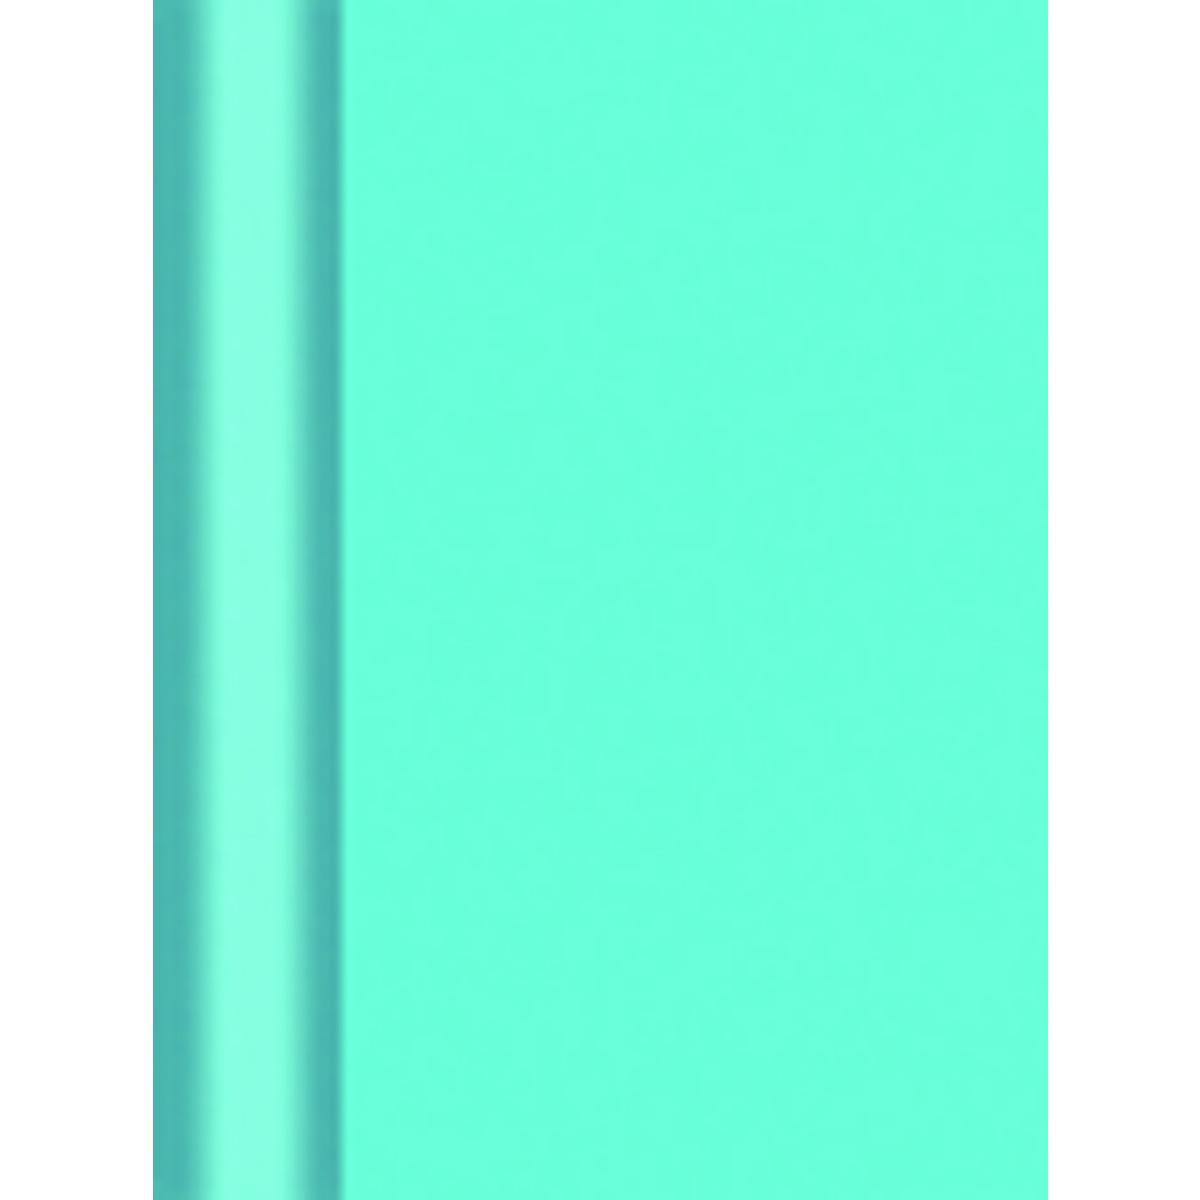 Nappe en rouleau Intissé  Gappy - Blanc  - 4,5 x 1,20 m - Intissé - Bleu turquoise